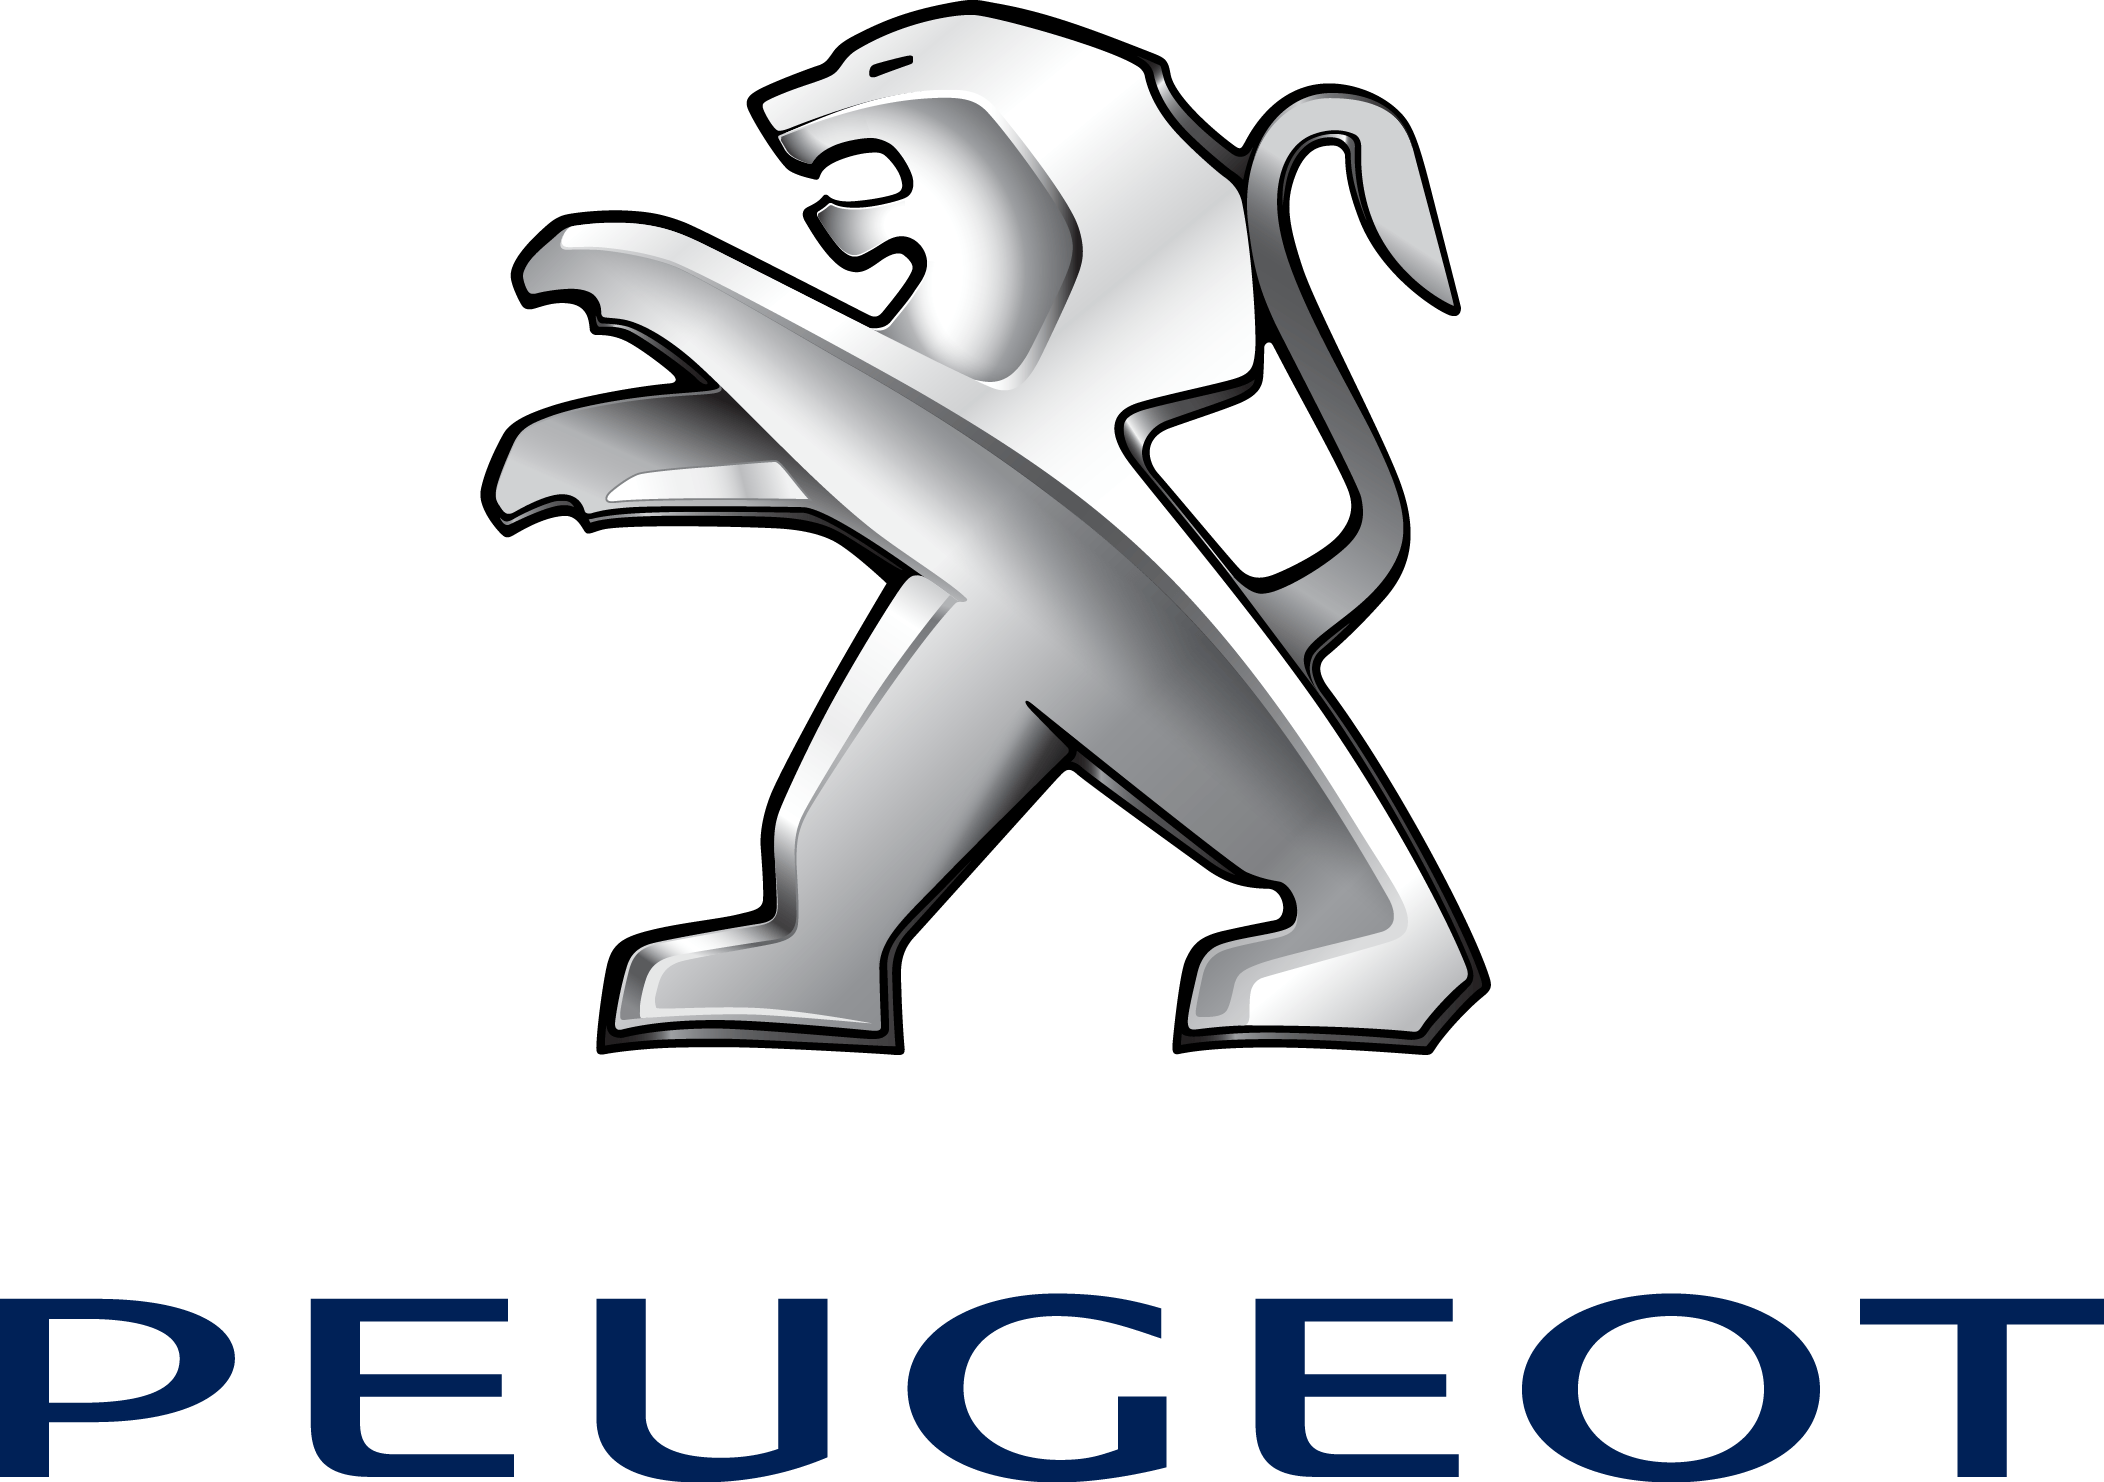 Peugeot Logo. ePin Graphic, Design Elements, Clipart